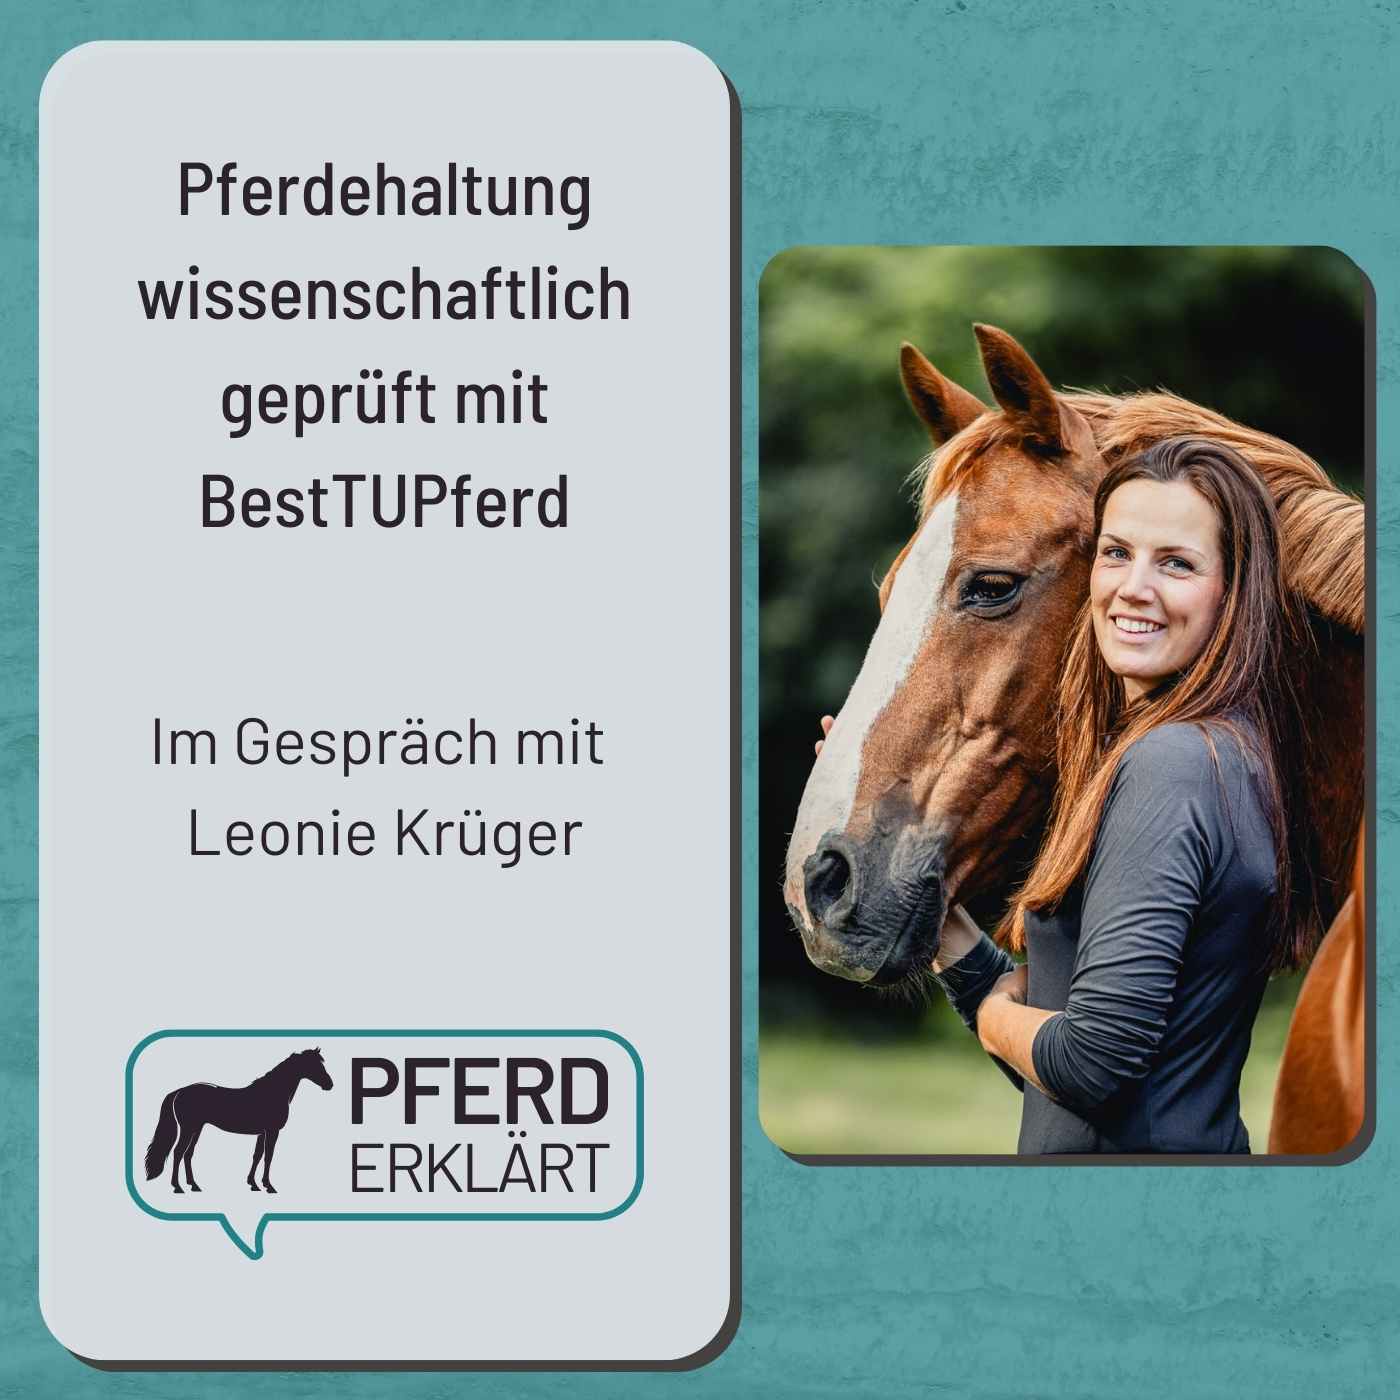 Wissenschaftliche Beurteilung von Pferdehaltung mit BestTUPferd. Im Gespräch mit Leonie Krüger